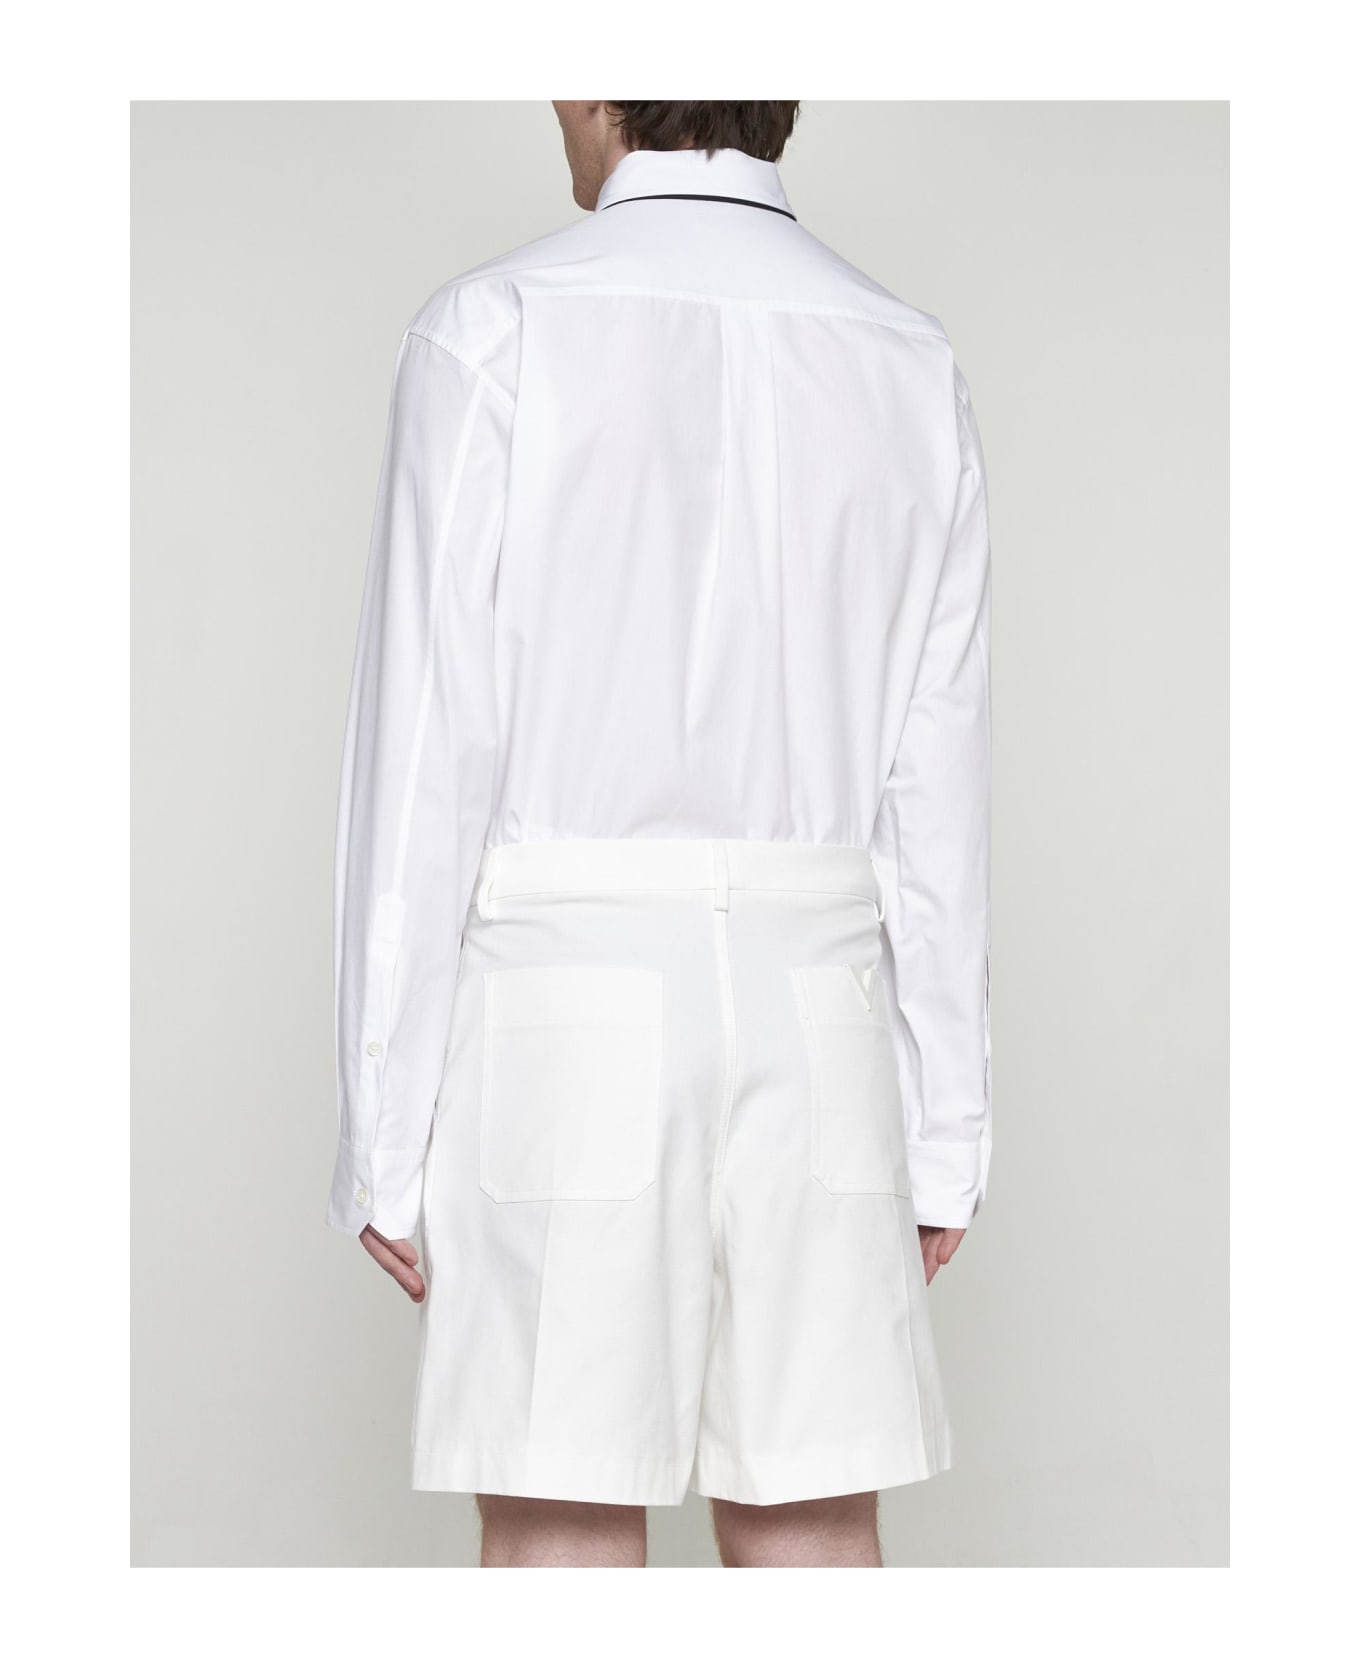 Valentino Garavani Bermuda Shorts - White ショートパンツ